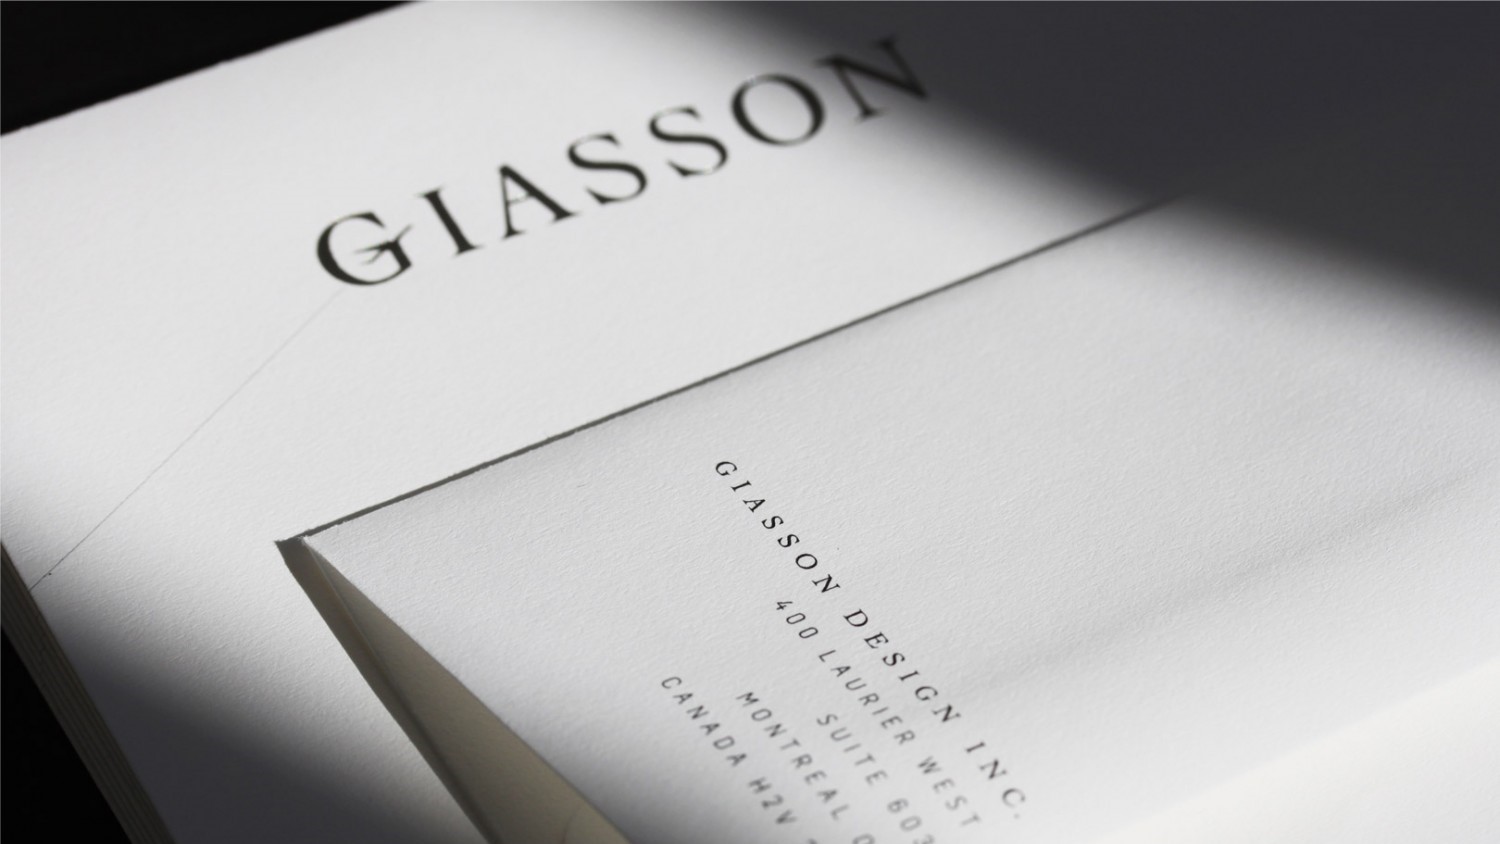 Giasson Design